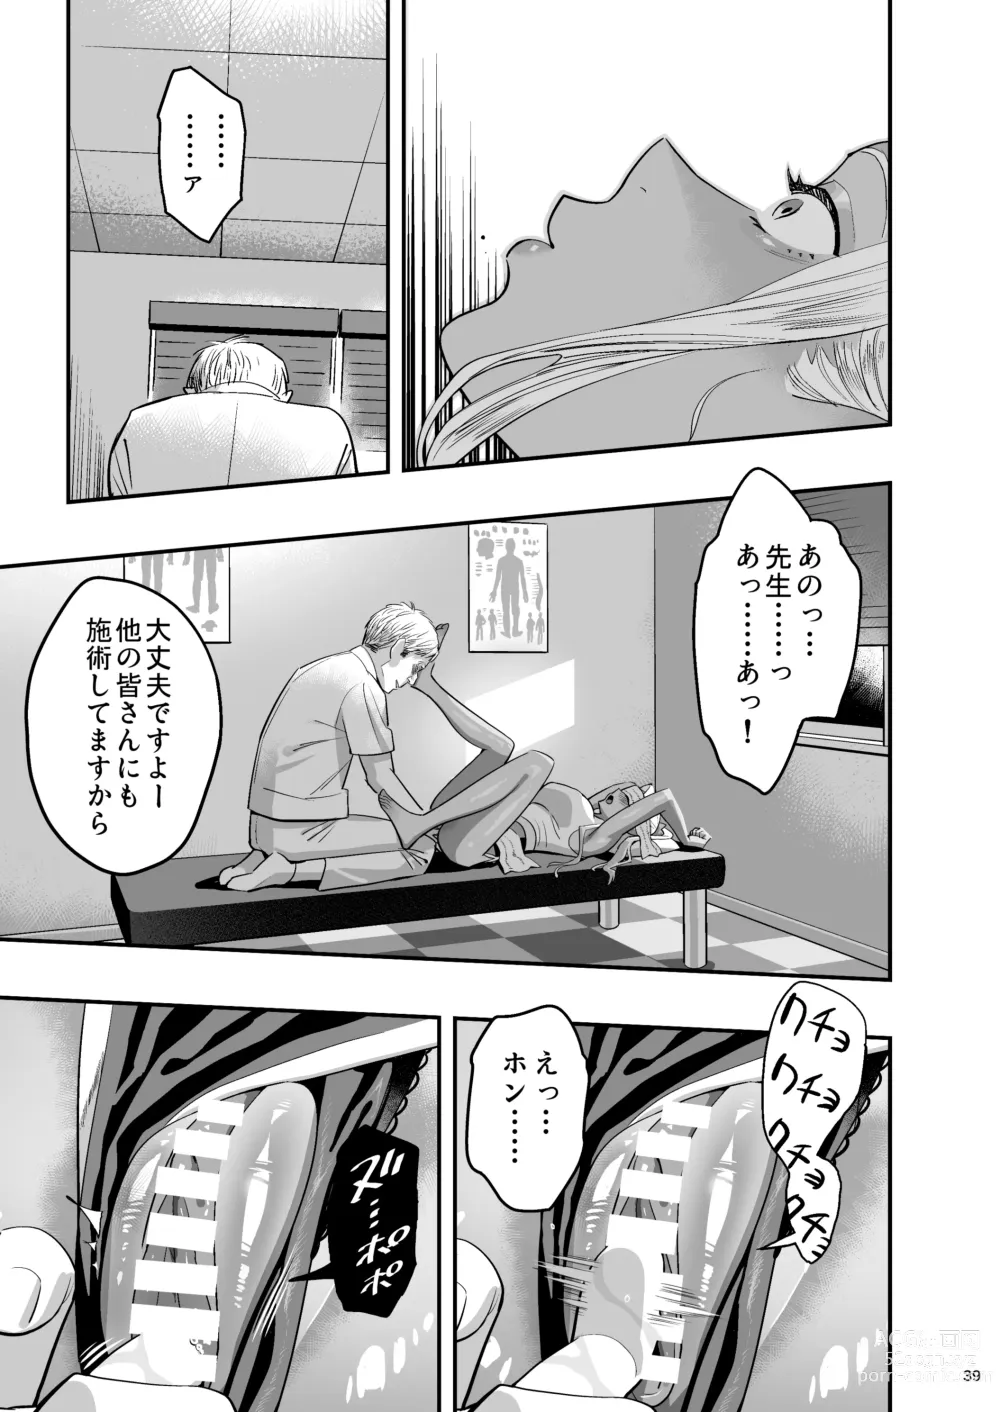 Page 38 of doujinshi Watashi ga Saki ni Suki datta no ni Seitai.